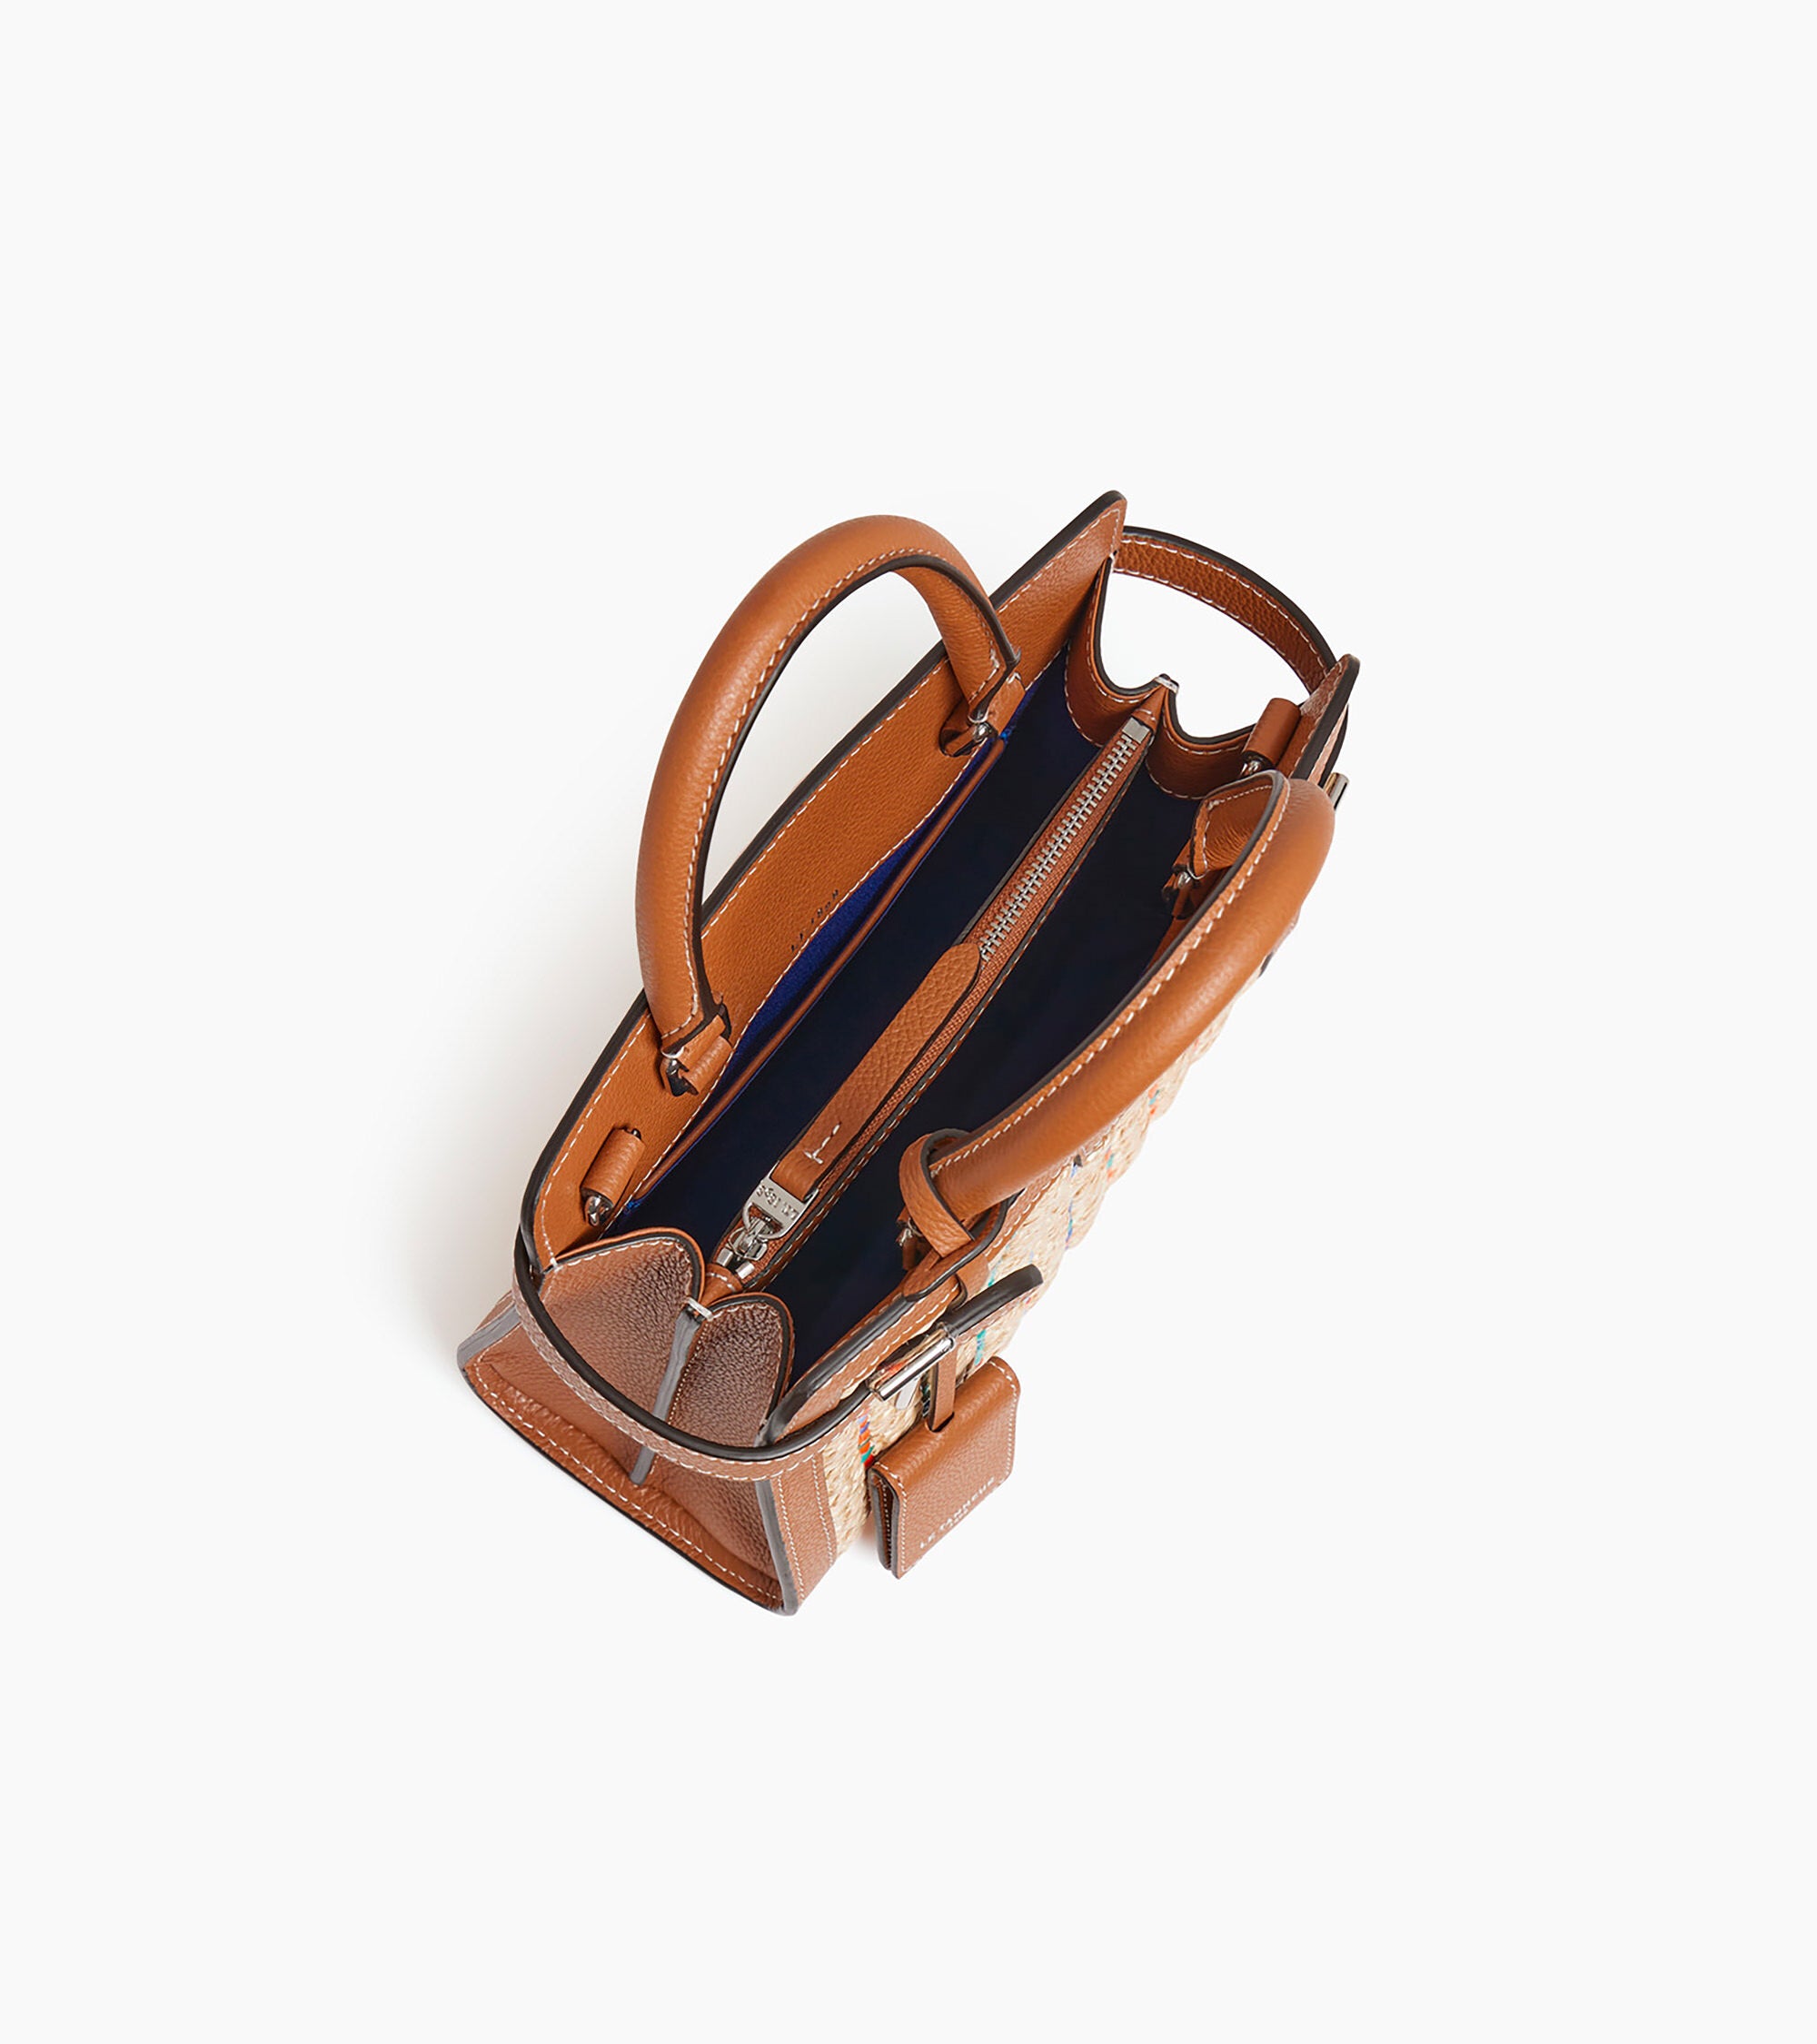 Emilie small raffia handbag